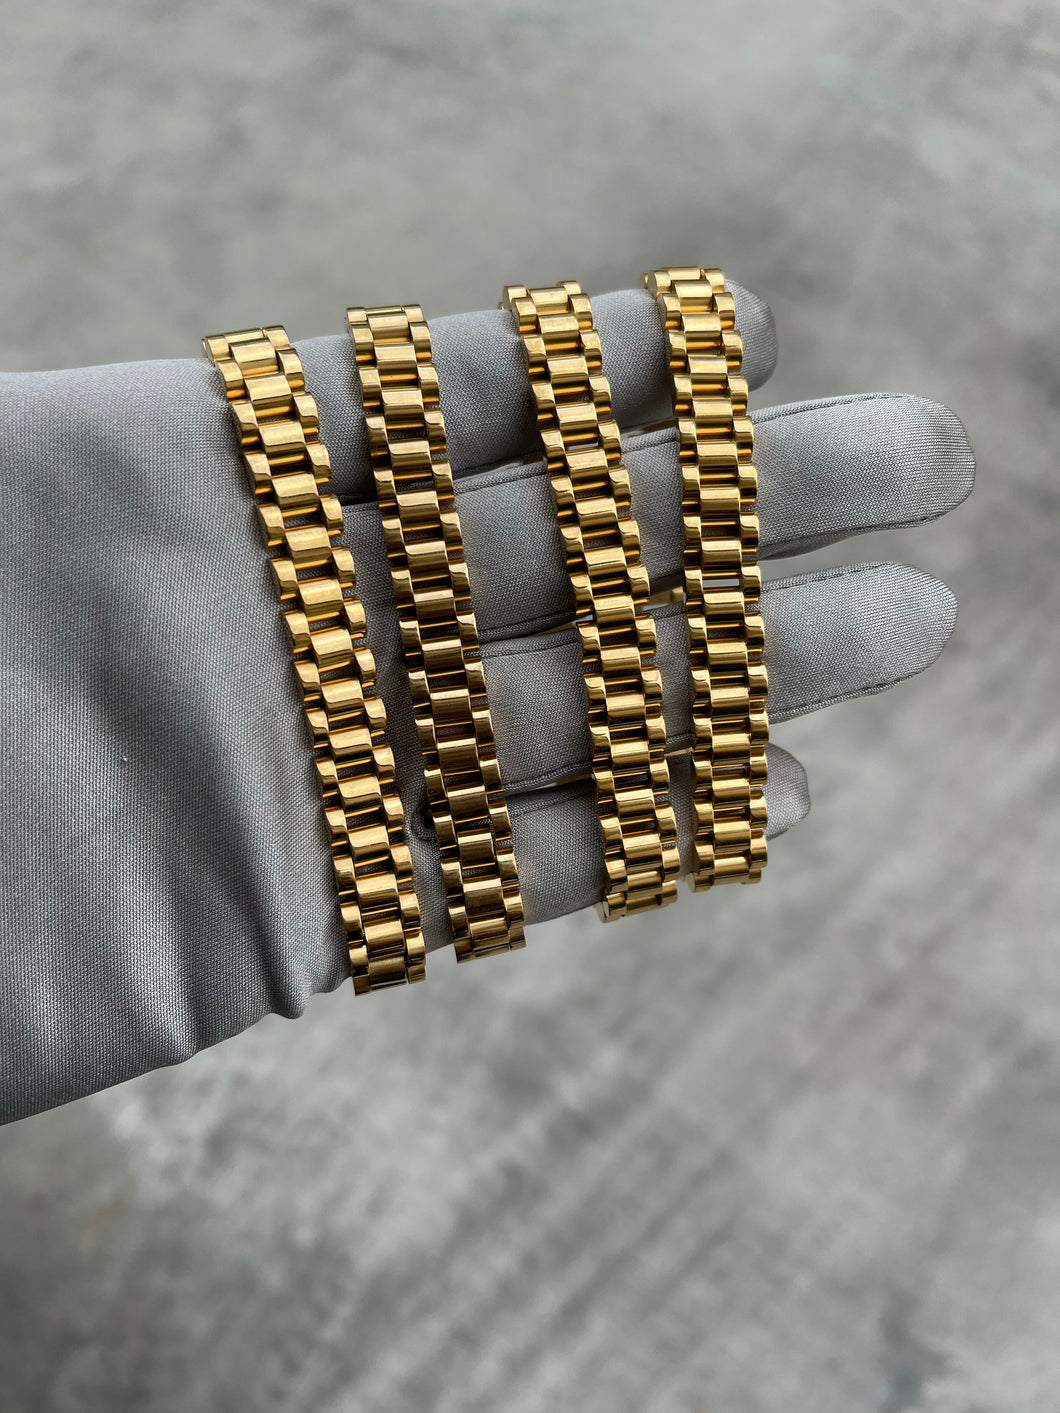 Gold Presidential bracelet